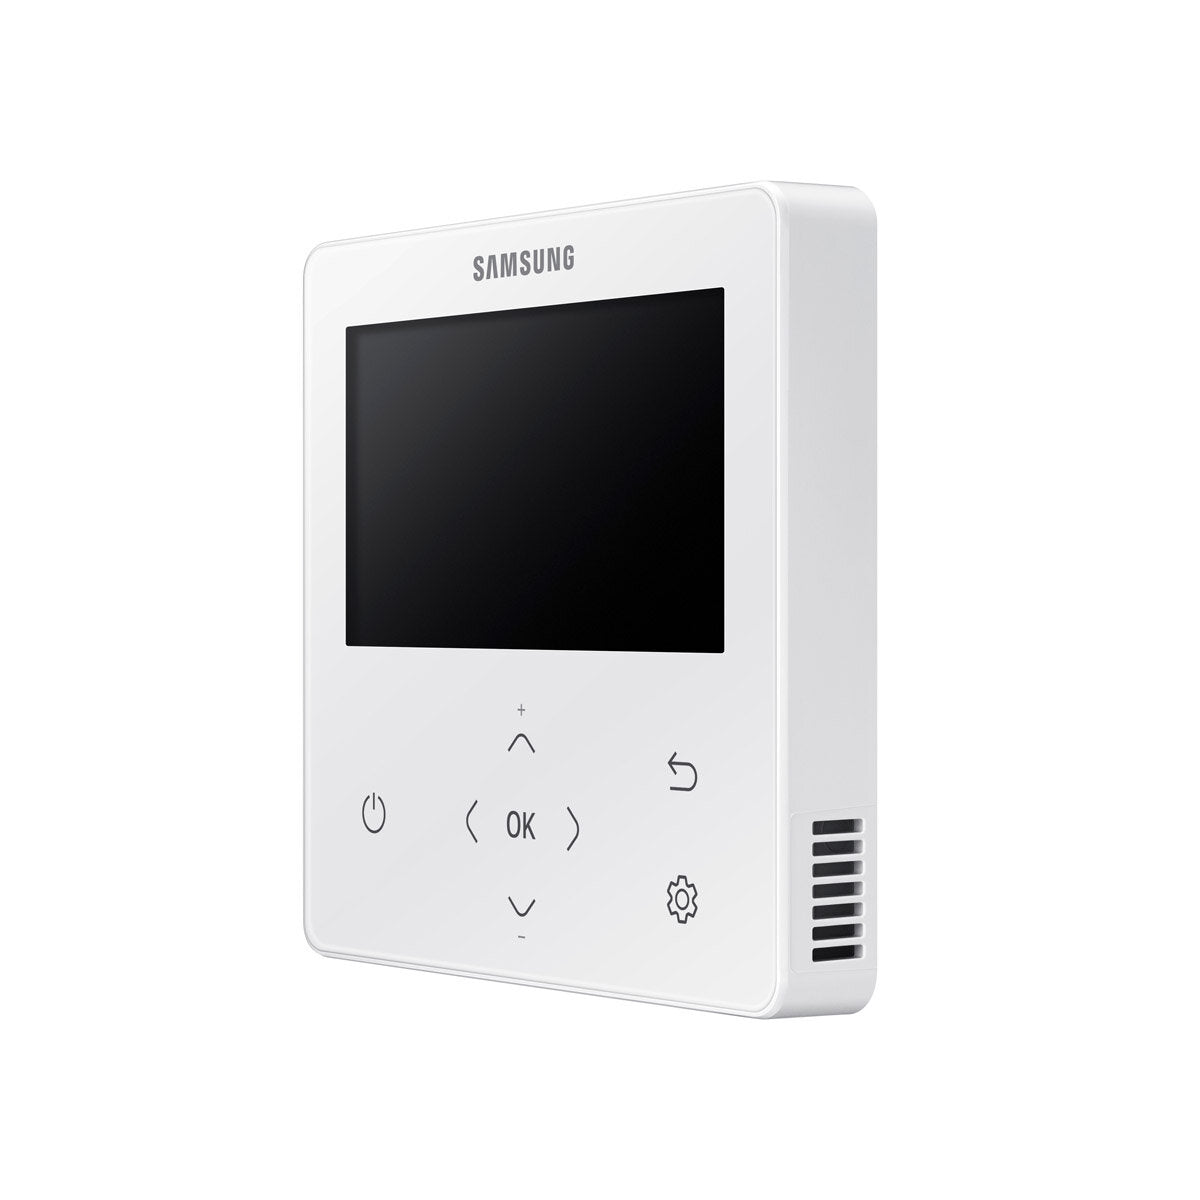 Samsung Air conditioner Windfree 4-way penta split 9000 + 9000 + 9000 + 9000 + 18000 BTU inverter A ++ outdoor unit 10.0 kW